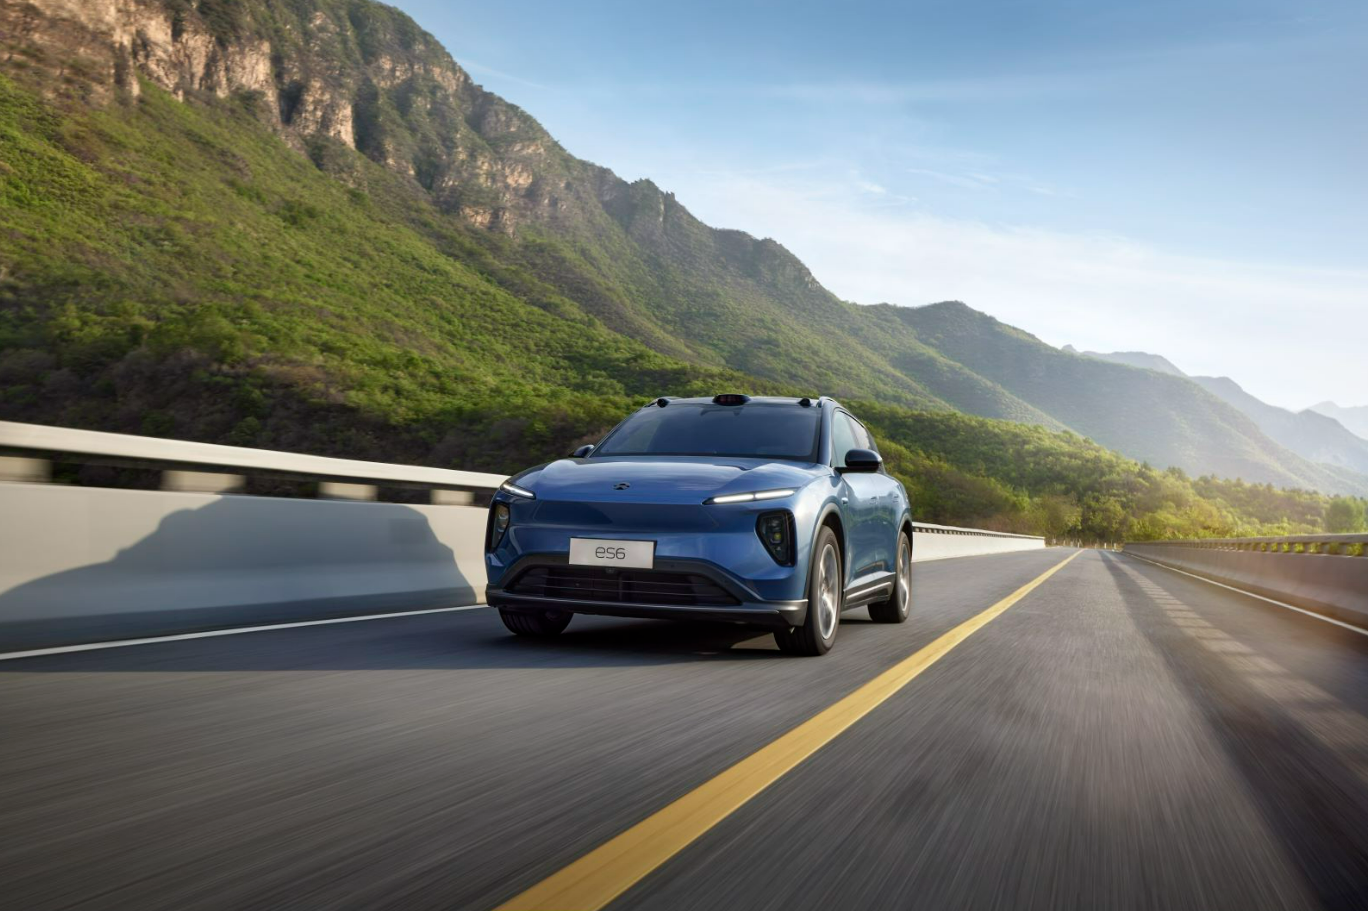 蔚来智能电动全能SUV全新ES6正式上市售价36.8万元起